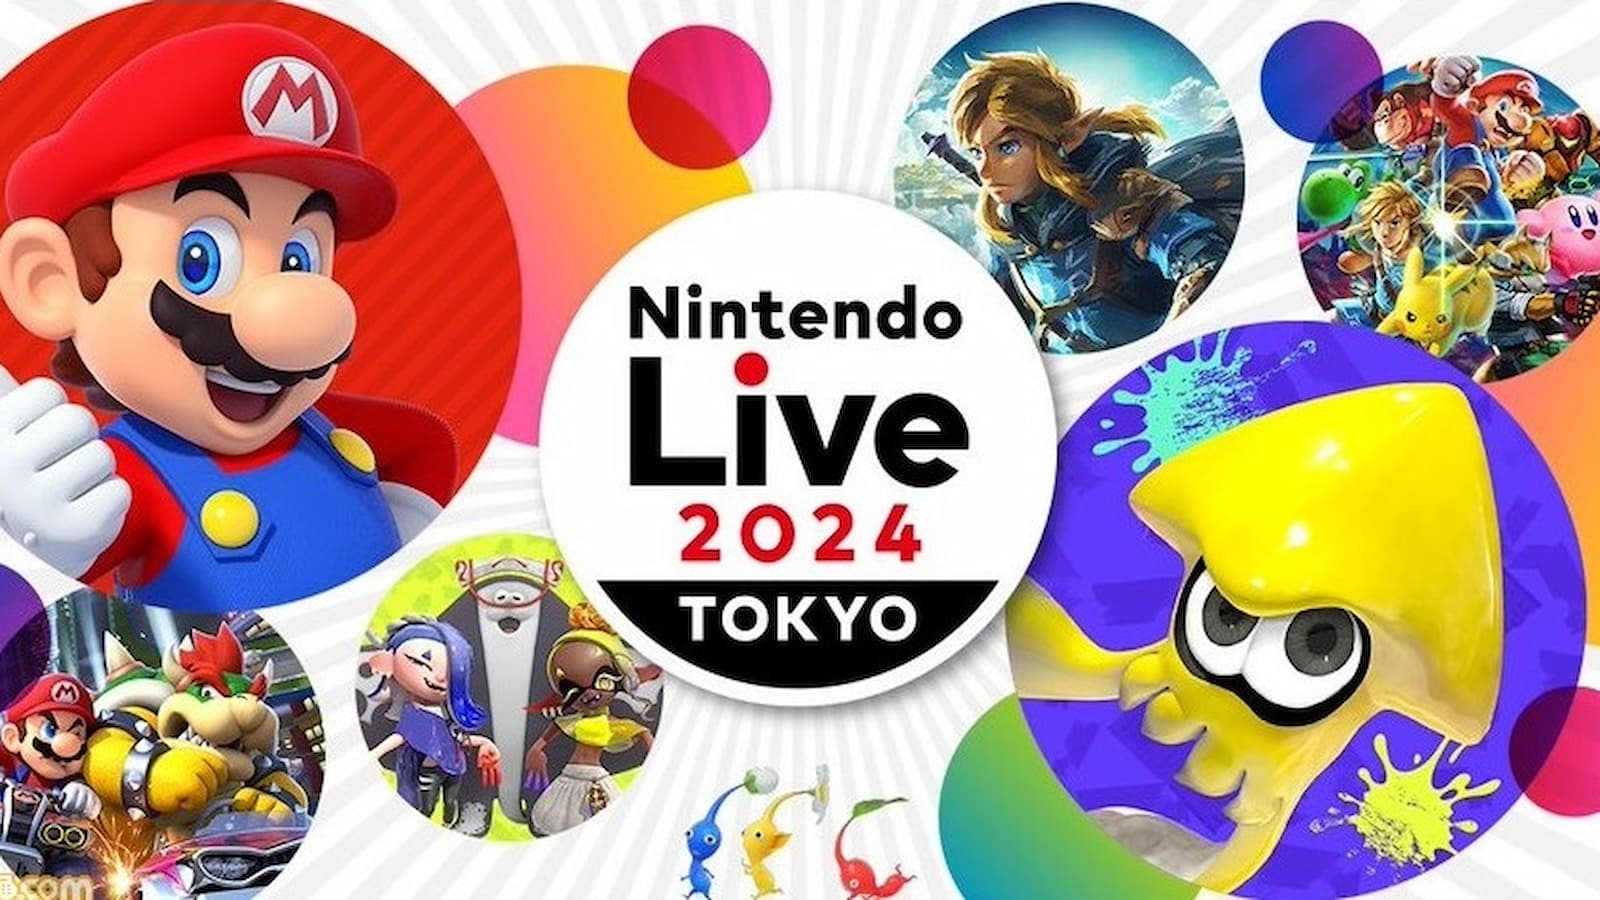 The Nintendo Live 2024 logo